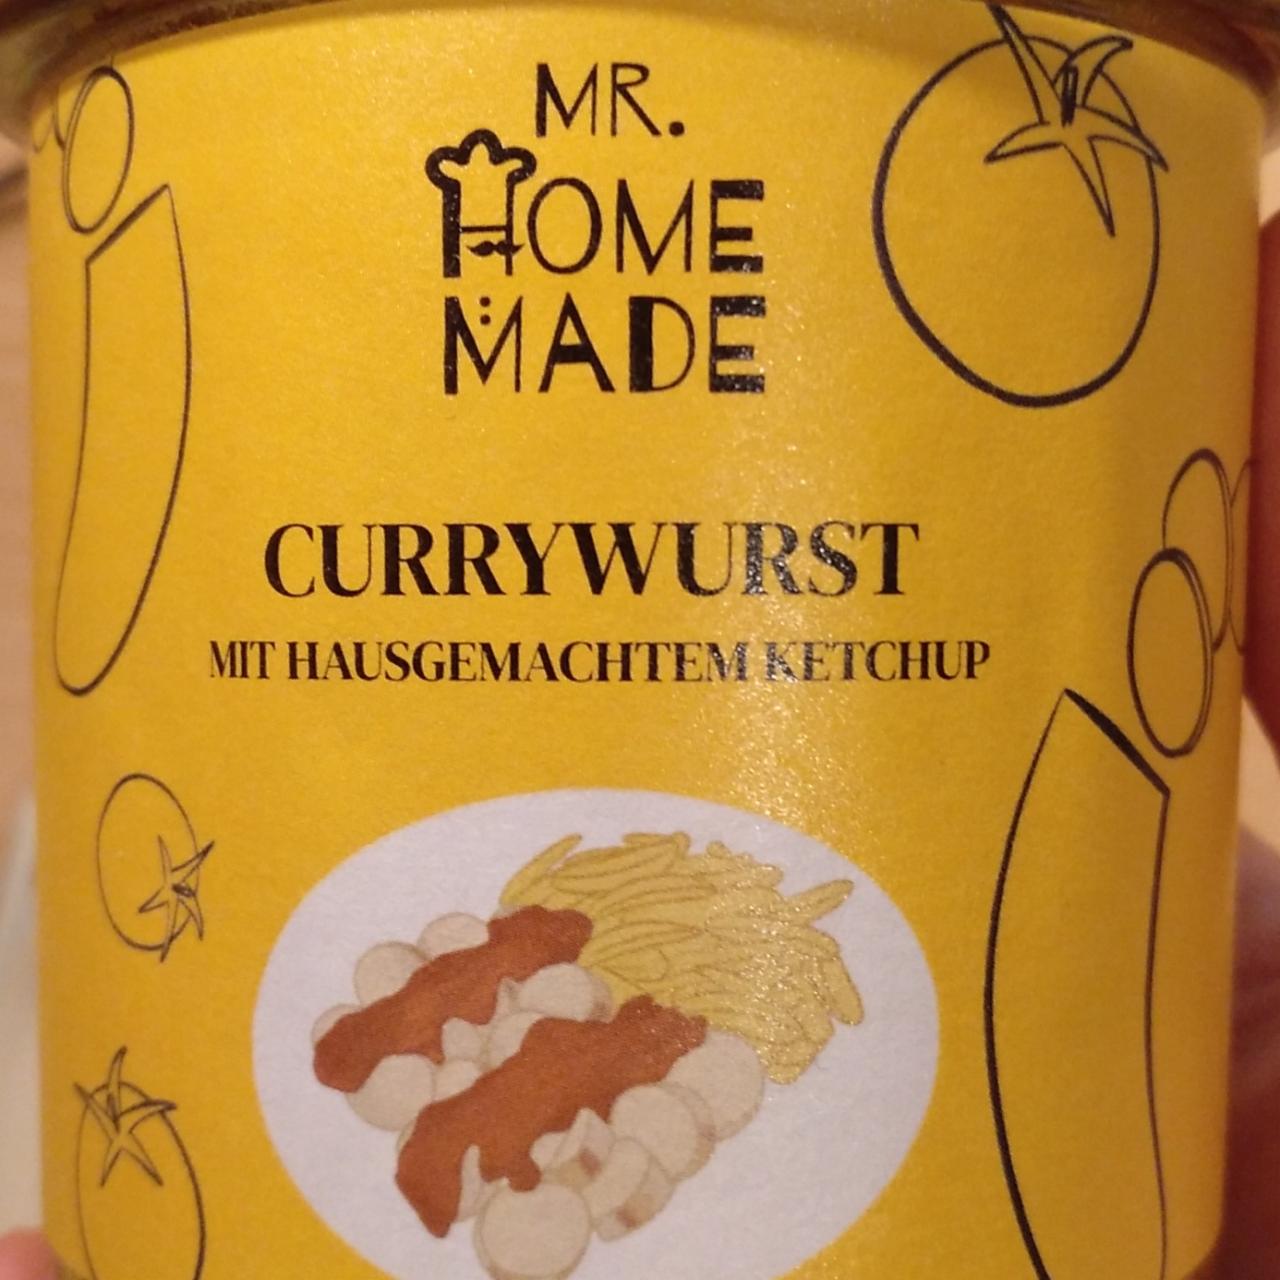 Fotografie - Currywurst mit hausgemachtem ketchup Mr. Home made